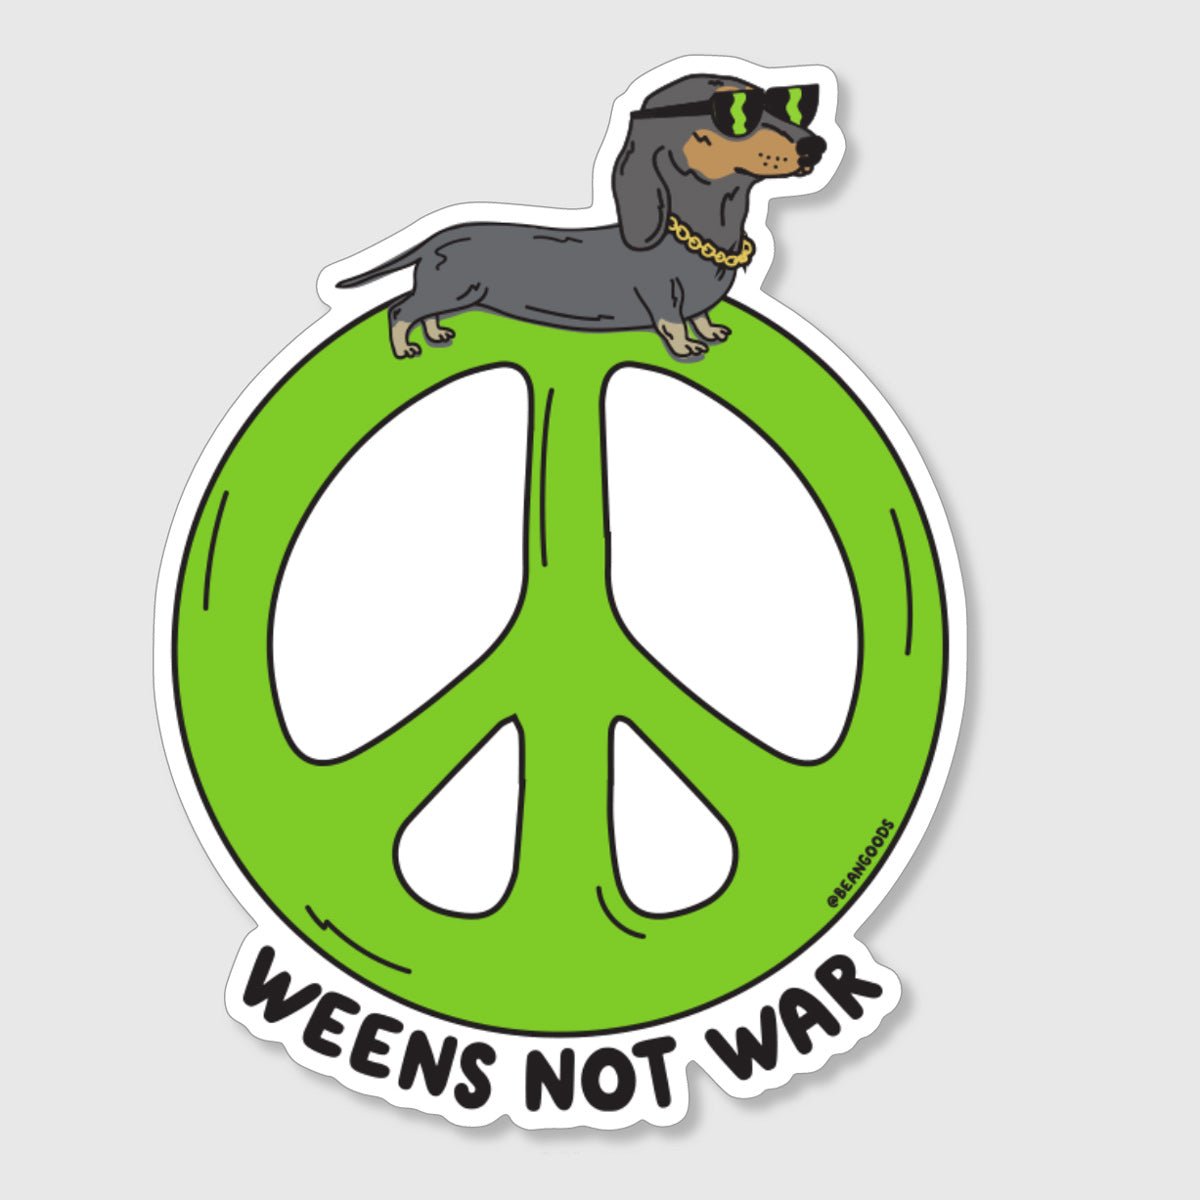 weens not war sticker - bean goods